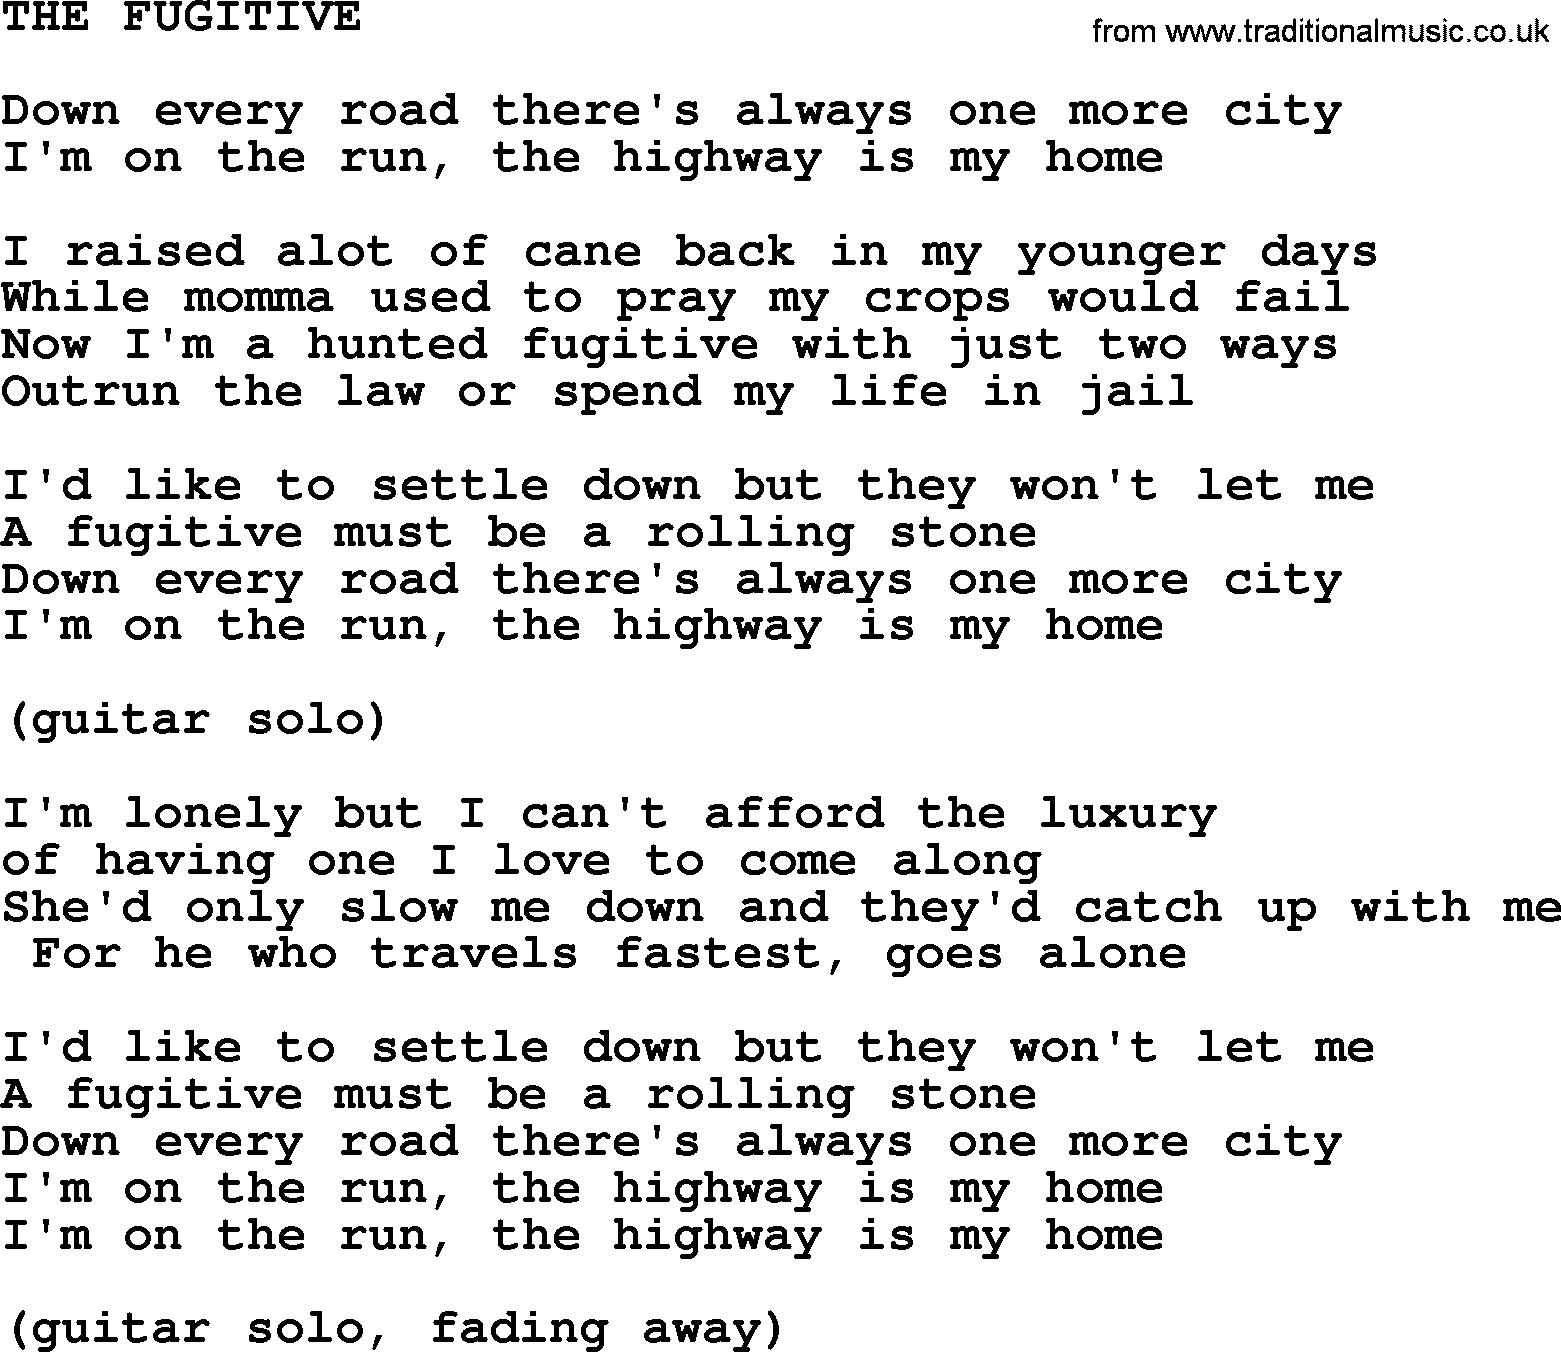 Merle Haggard song: The Fugitive, lyrics.